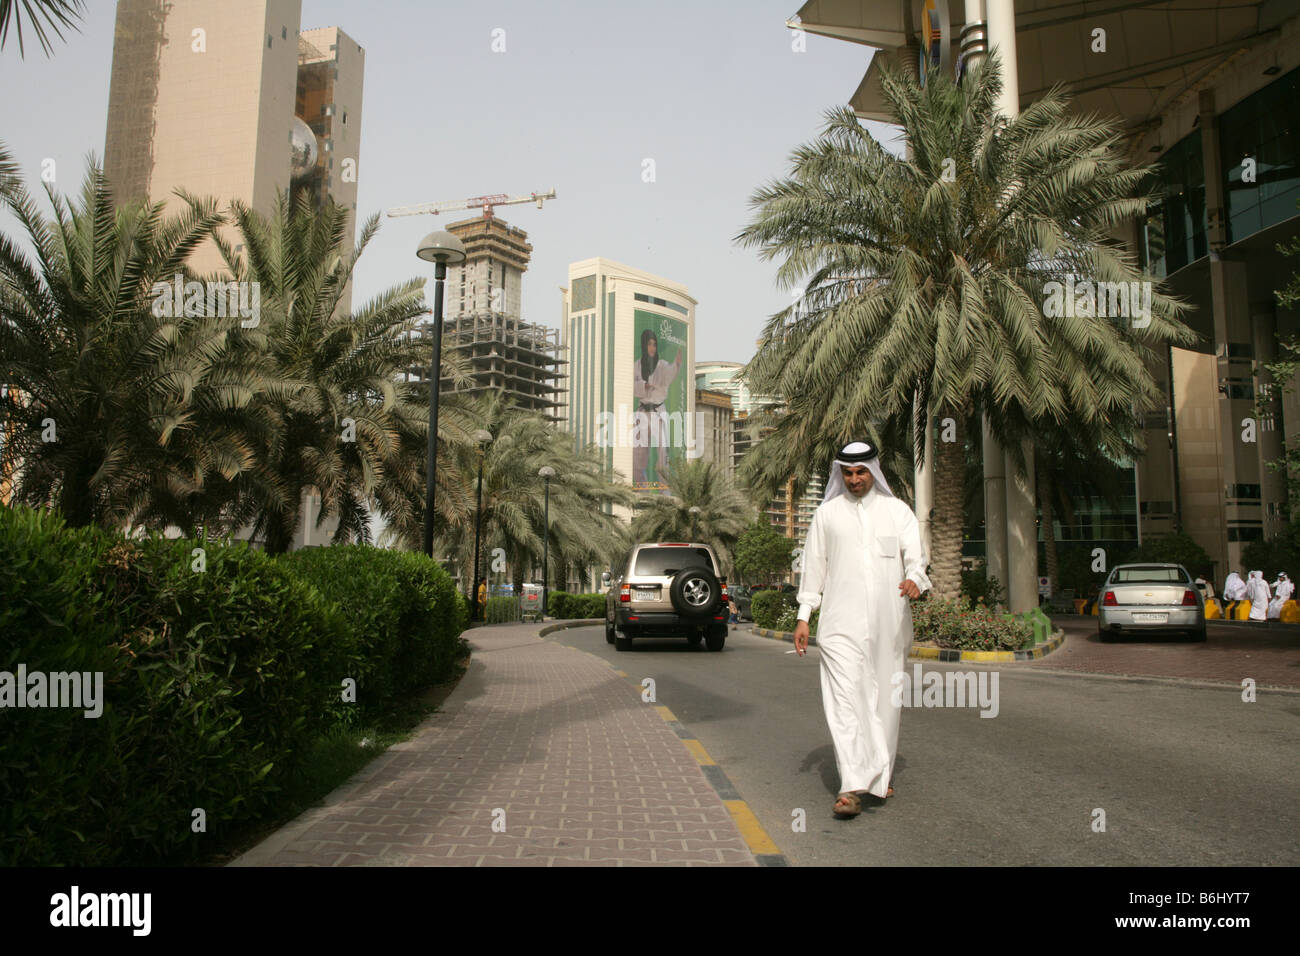 Scène de rue à l'homme du Qatar en costume traditionnel dans les rues de Doha, au Qatar. Banque D'Images